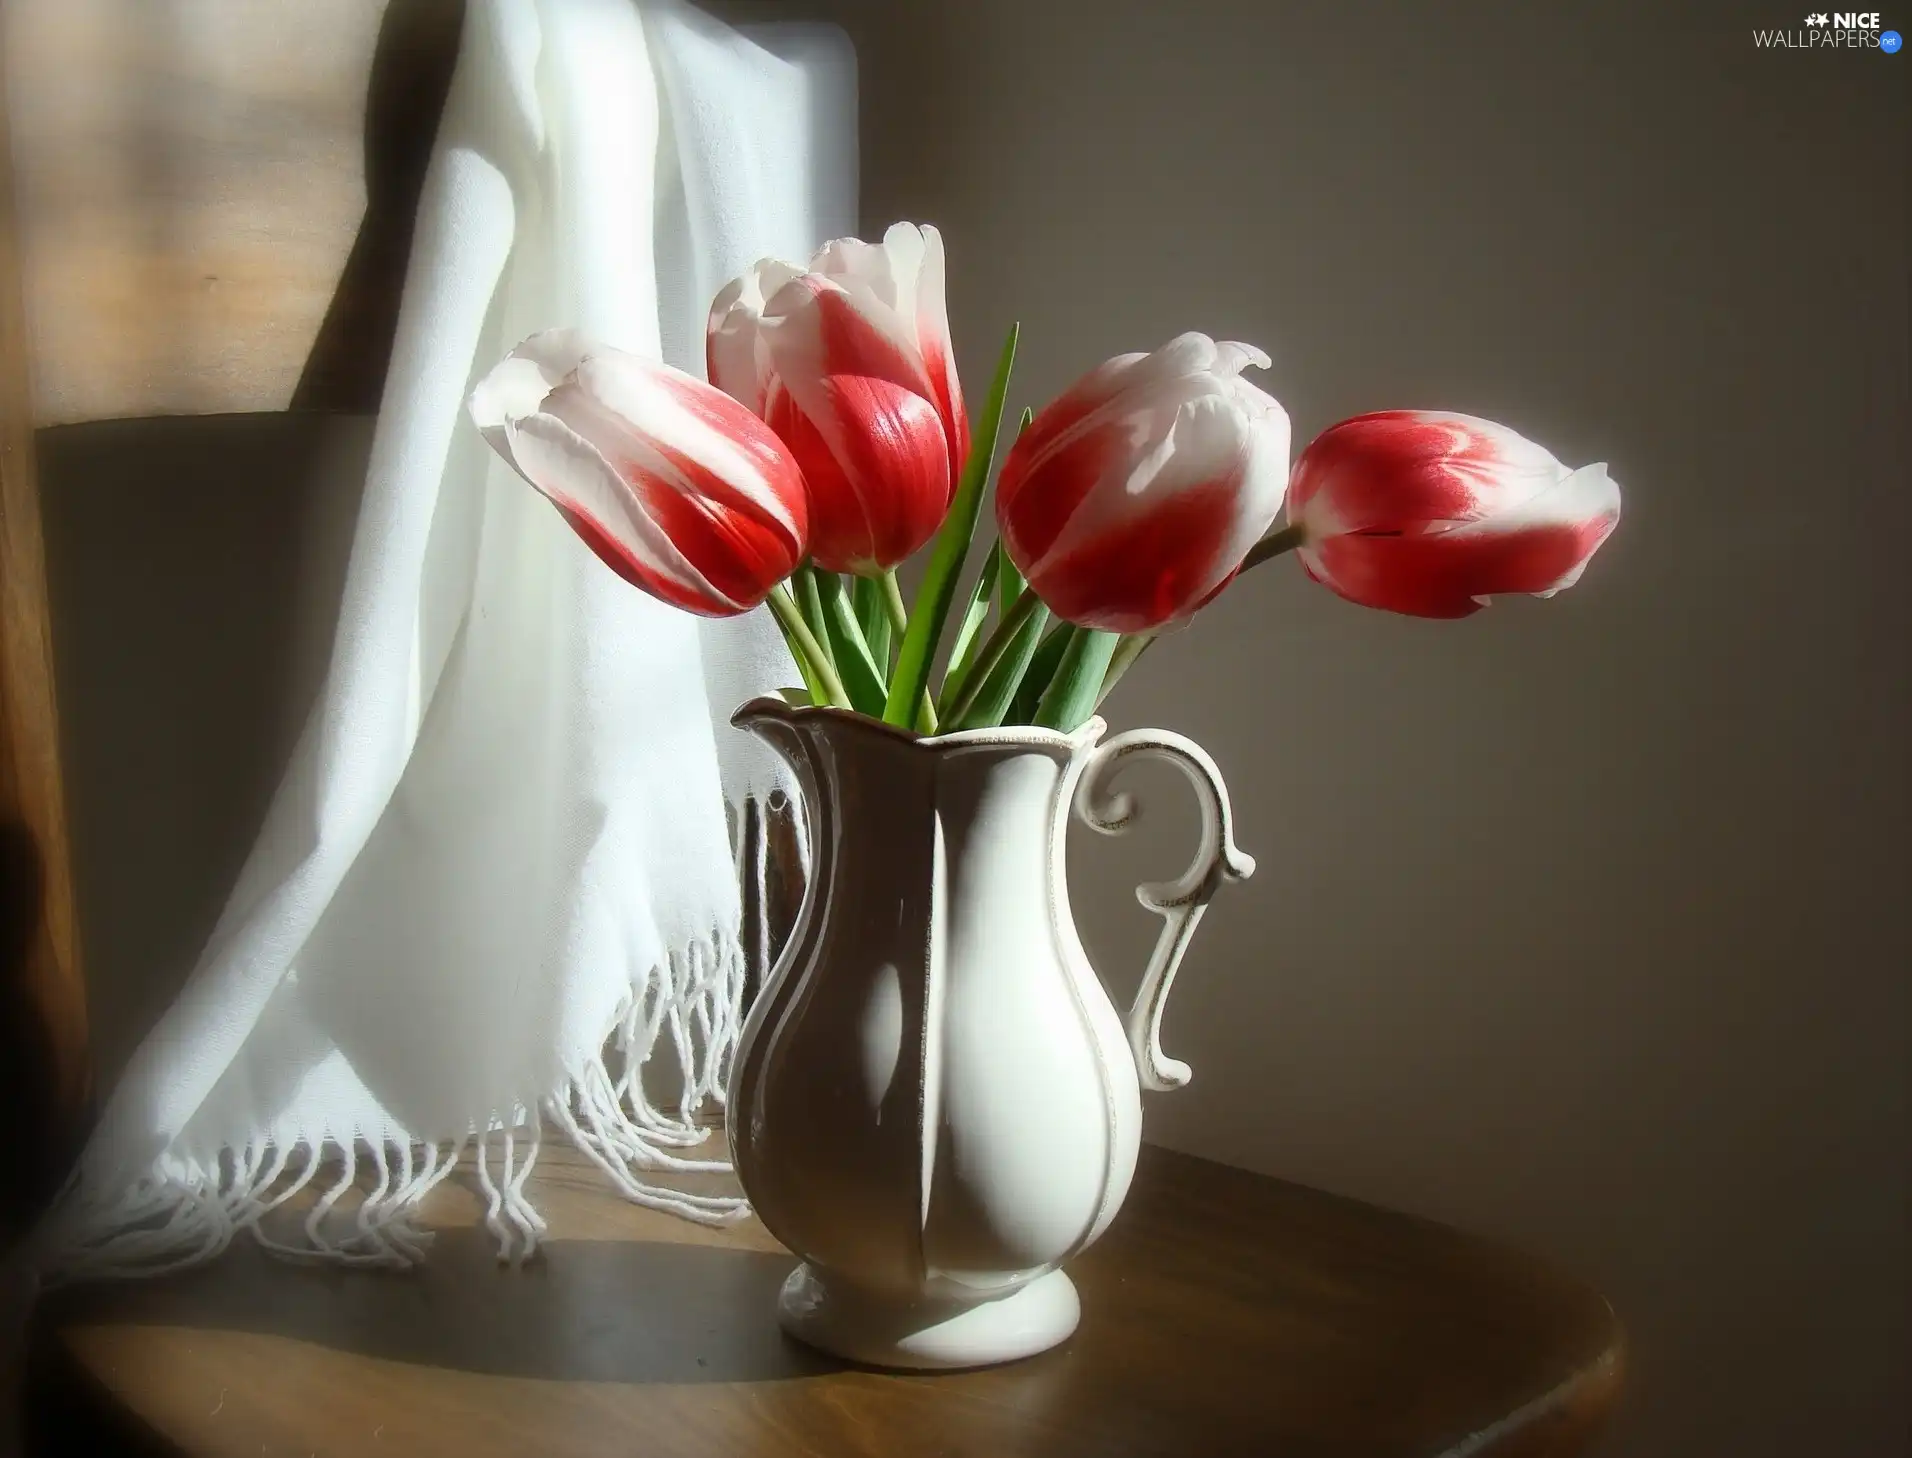 jug, Tulips